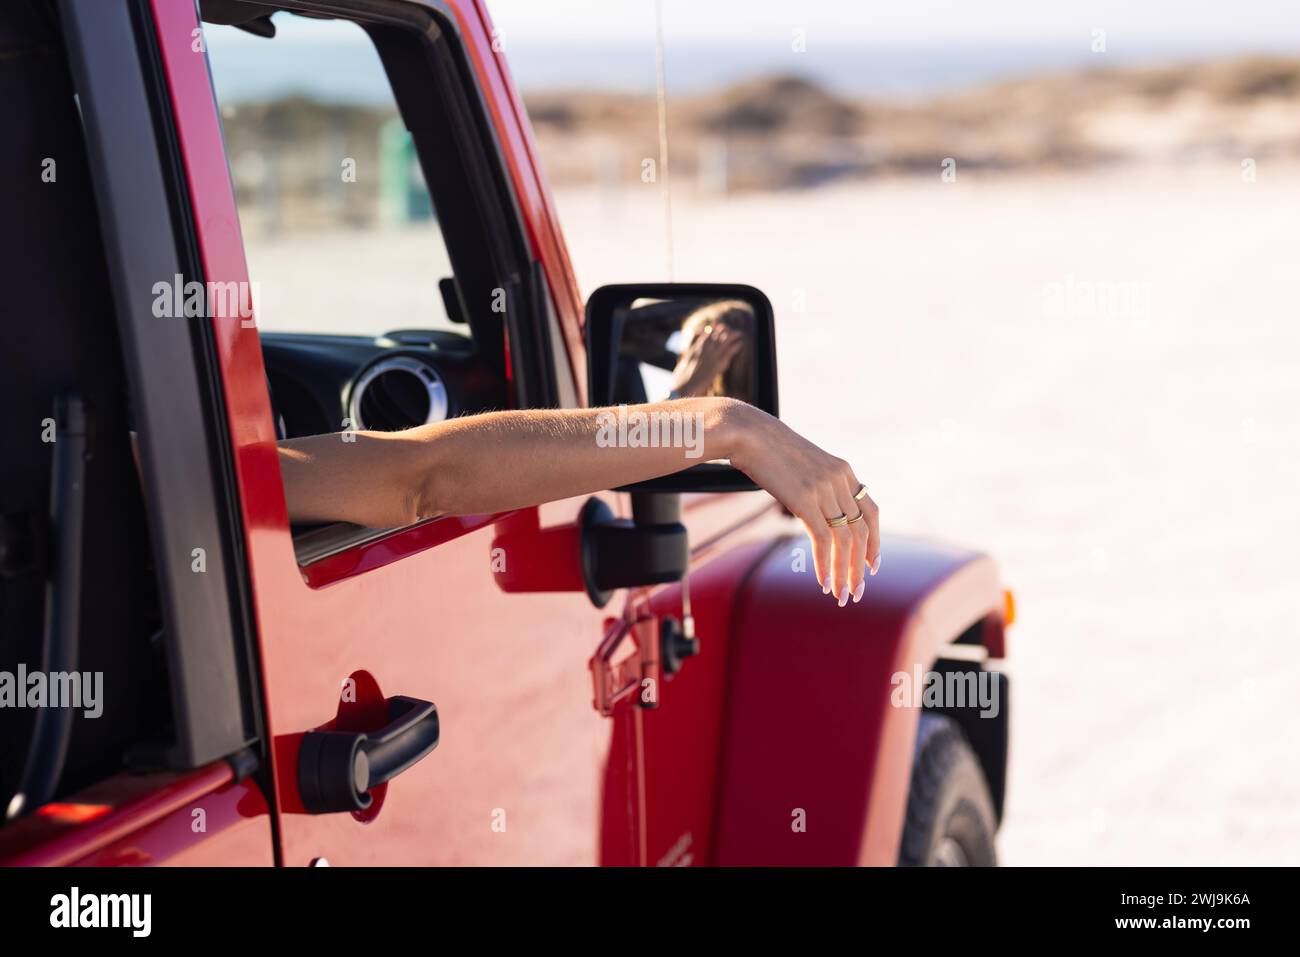 Una persona distende il braccio dal finestrino di un veicolo rosso durante un viaggio in auto, all'aperto Foto Stock